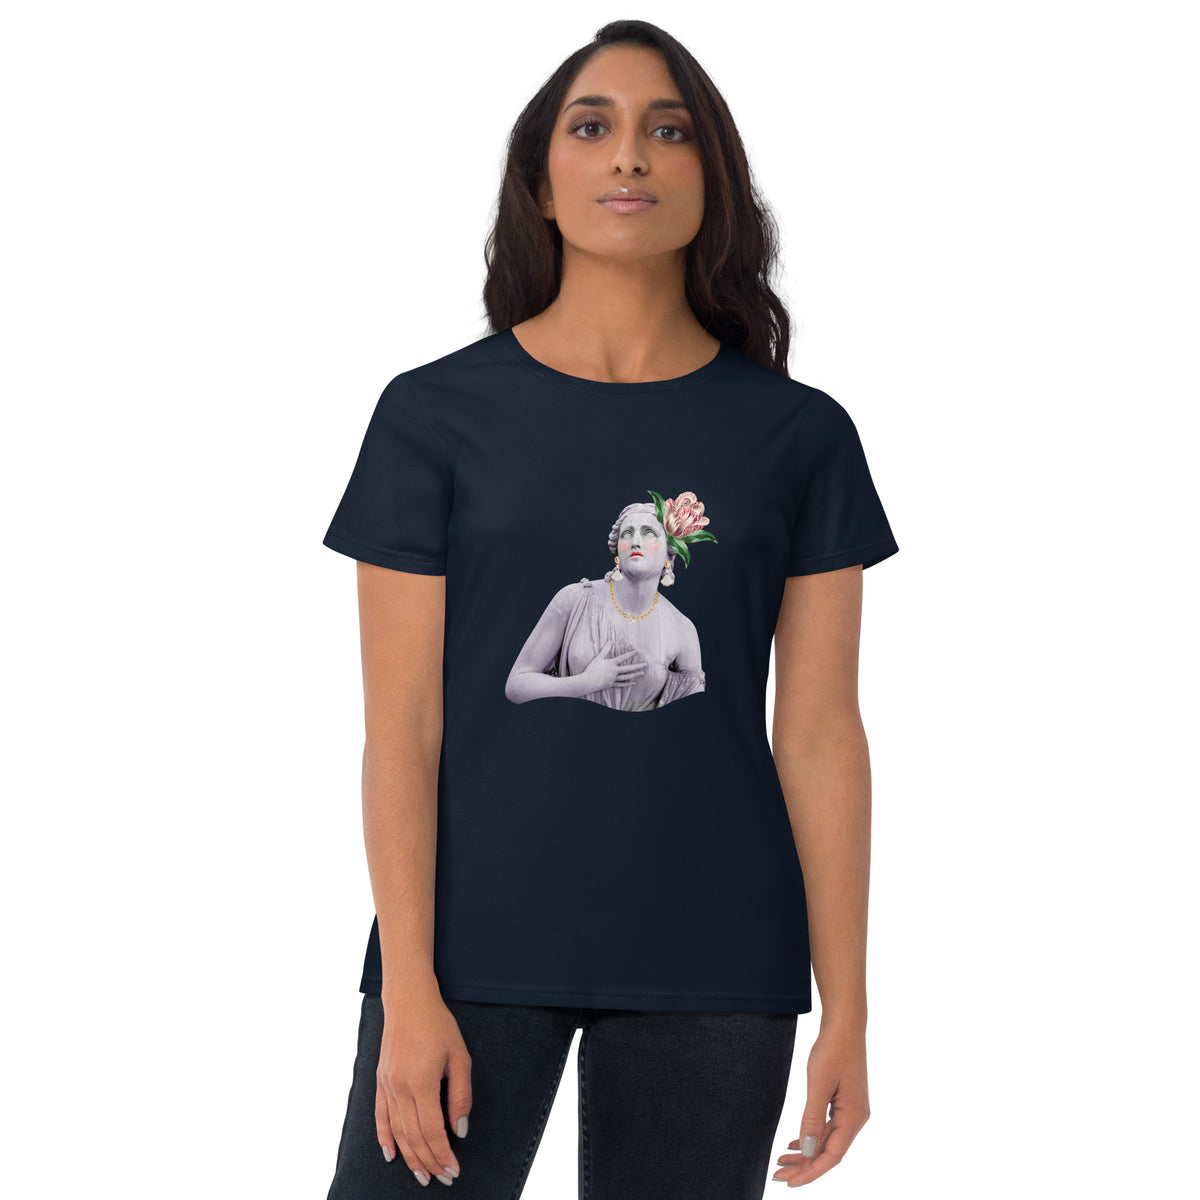 TG Women's Statue short sleeve t-shirt